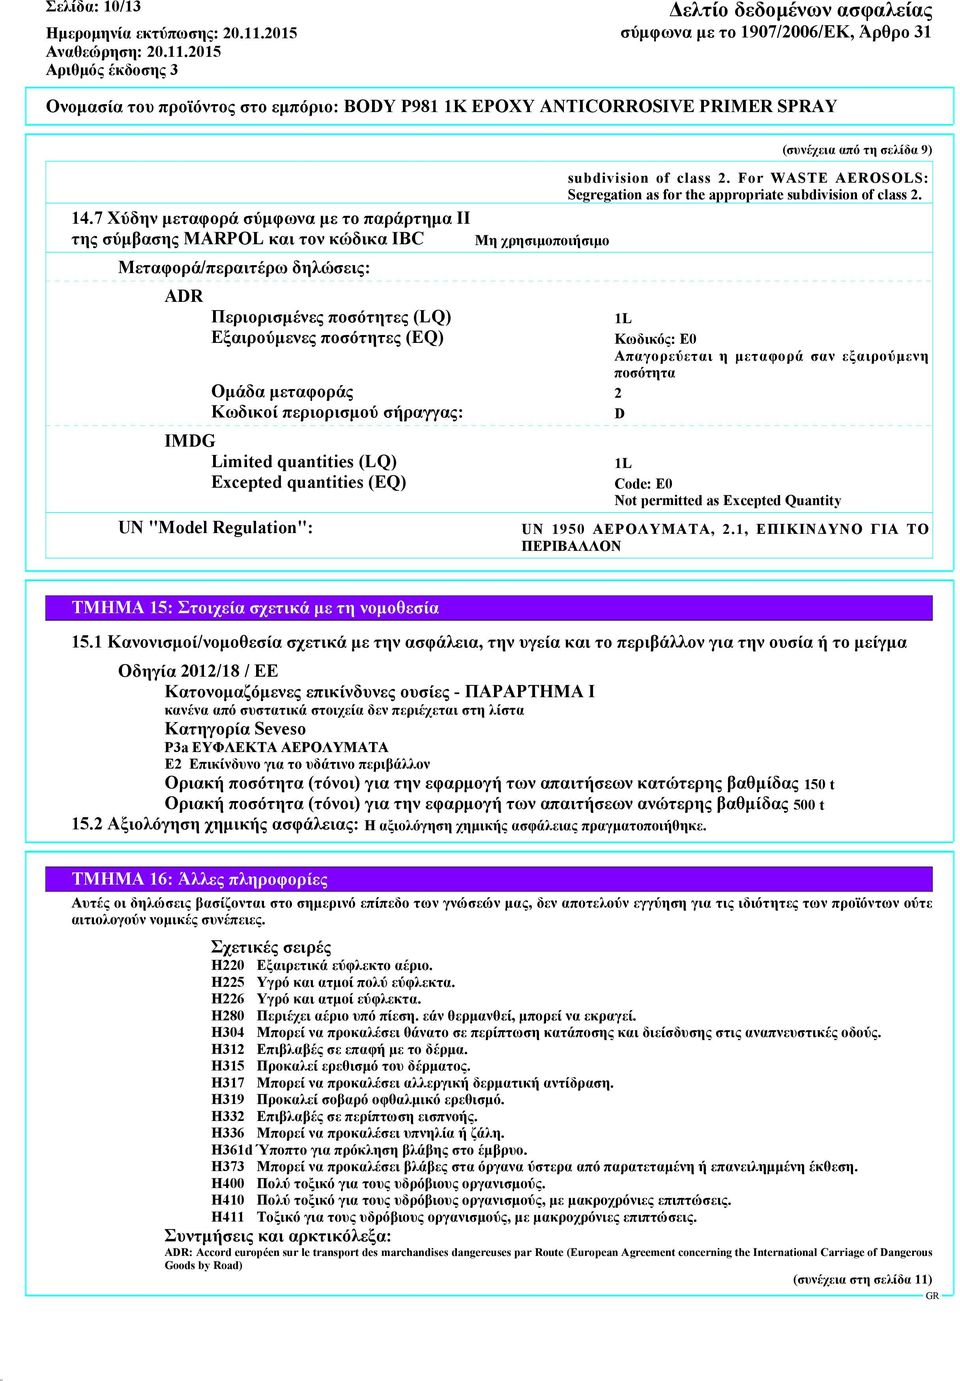 μεταφοράς 2 Κωδικοί περιορισμού σήραγγας: D IMDG Limited quantities (LQ) Excepted quantities (EQ) UN "Model Regulation": (συνέχεια από τη σελίδα 9) subdivision of class 2.